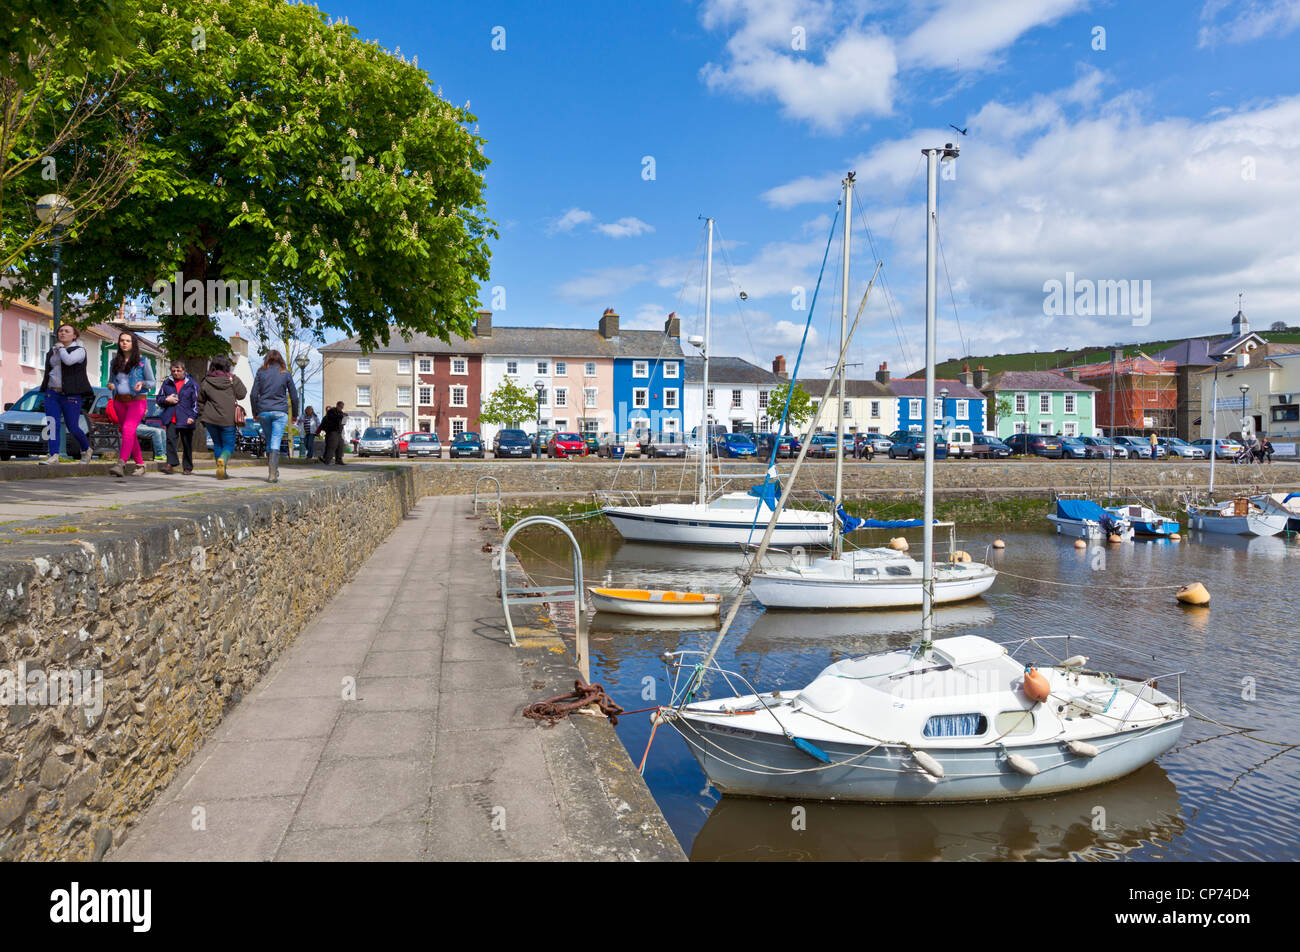 Les yachts et les petits bateaux dans le port intérieur Aberaeron Ceredigion Mid Wales coast UK GB EU Europe Banque D'Images